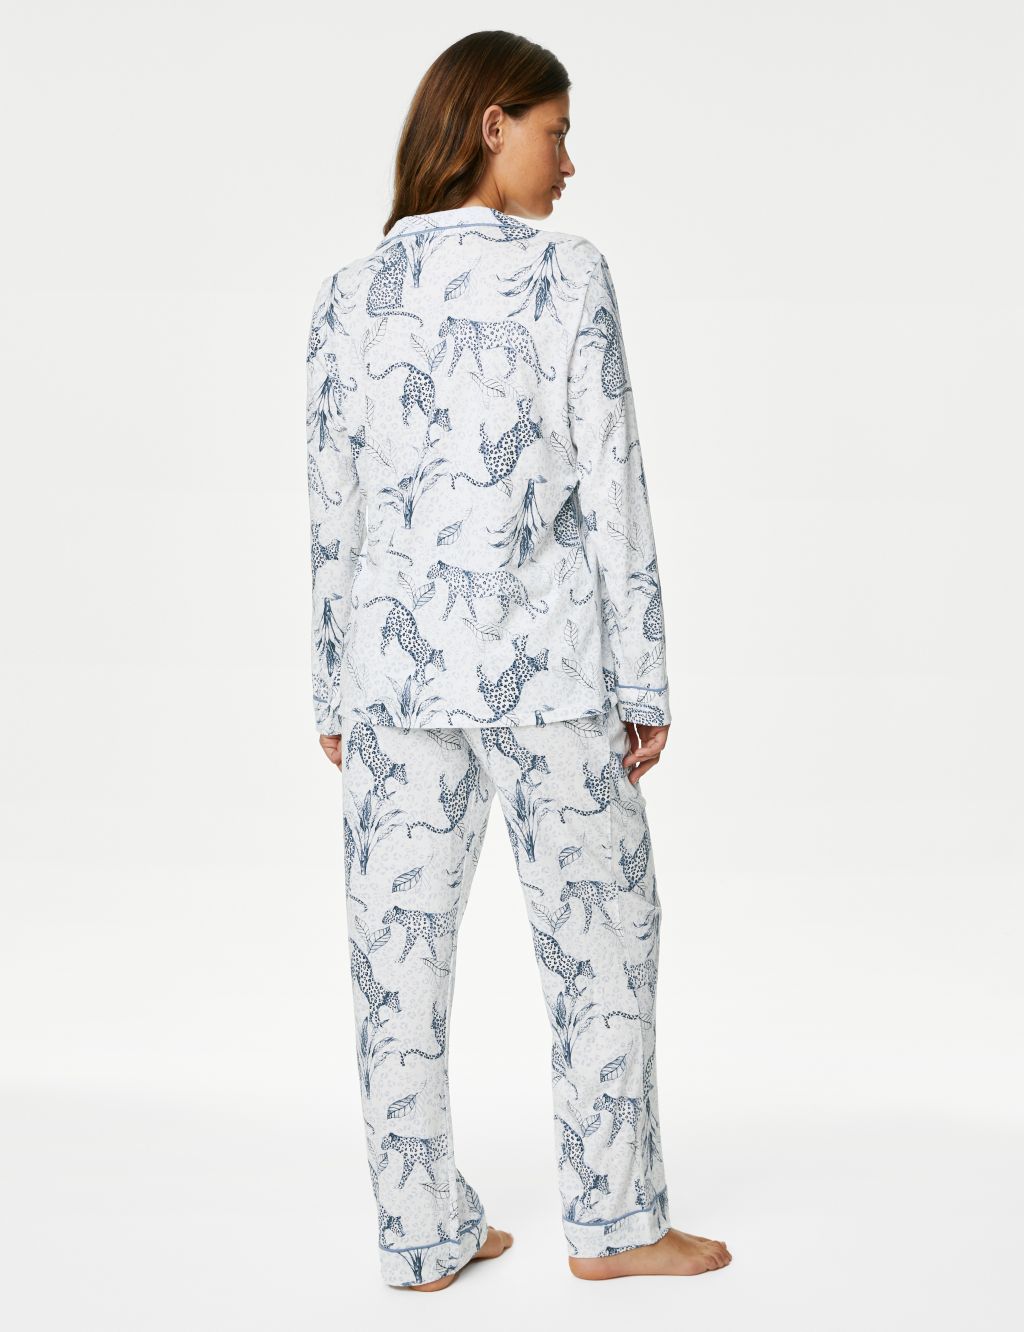 Leopard Print Pyjama Set image 6